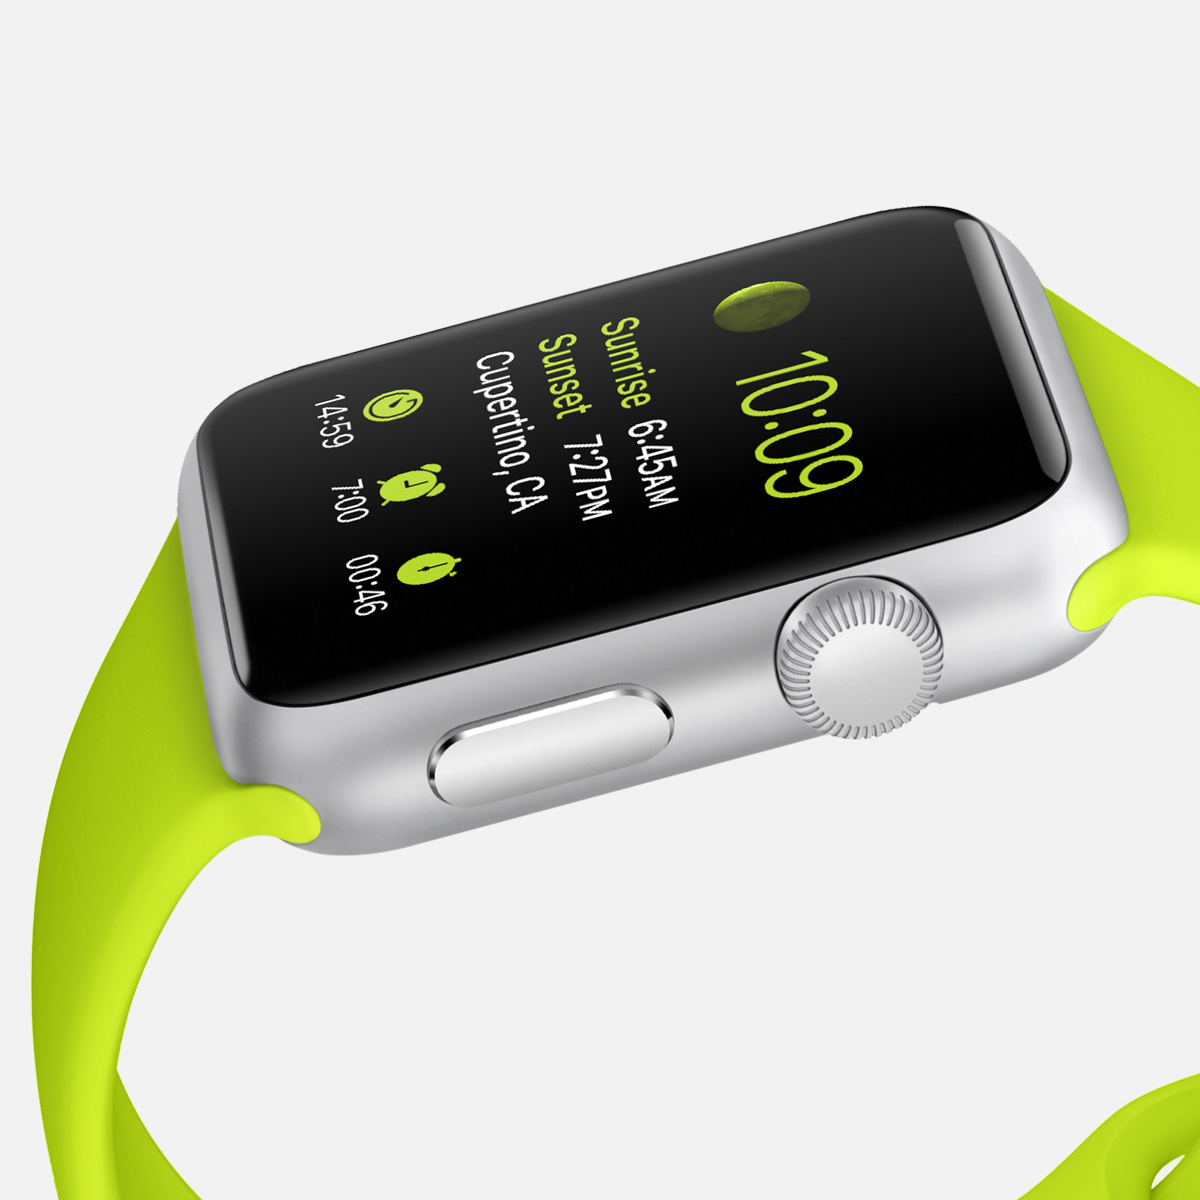 el apple watch llegara al mercado en abril iphone rompe records de venta 3